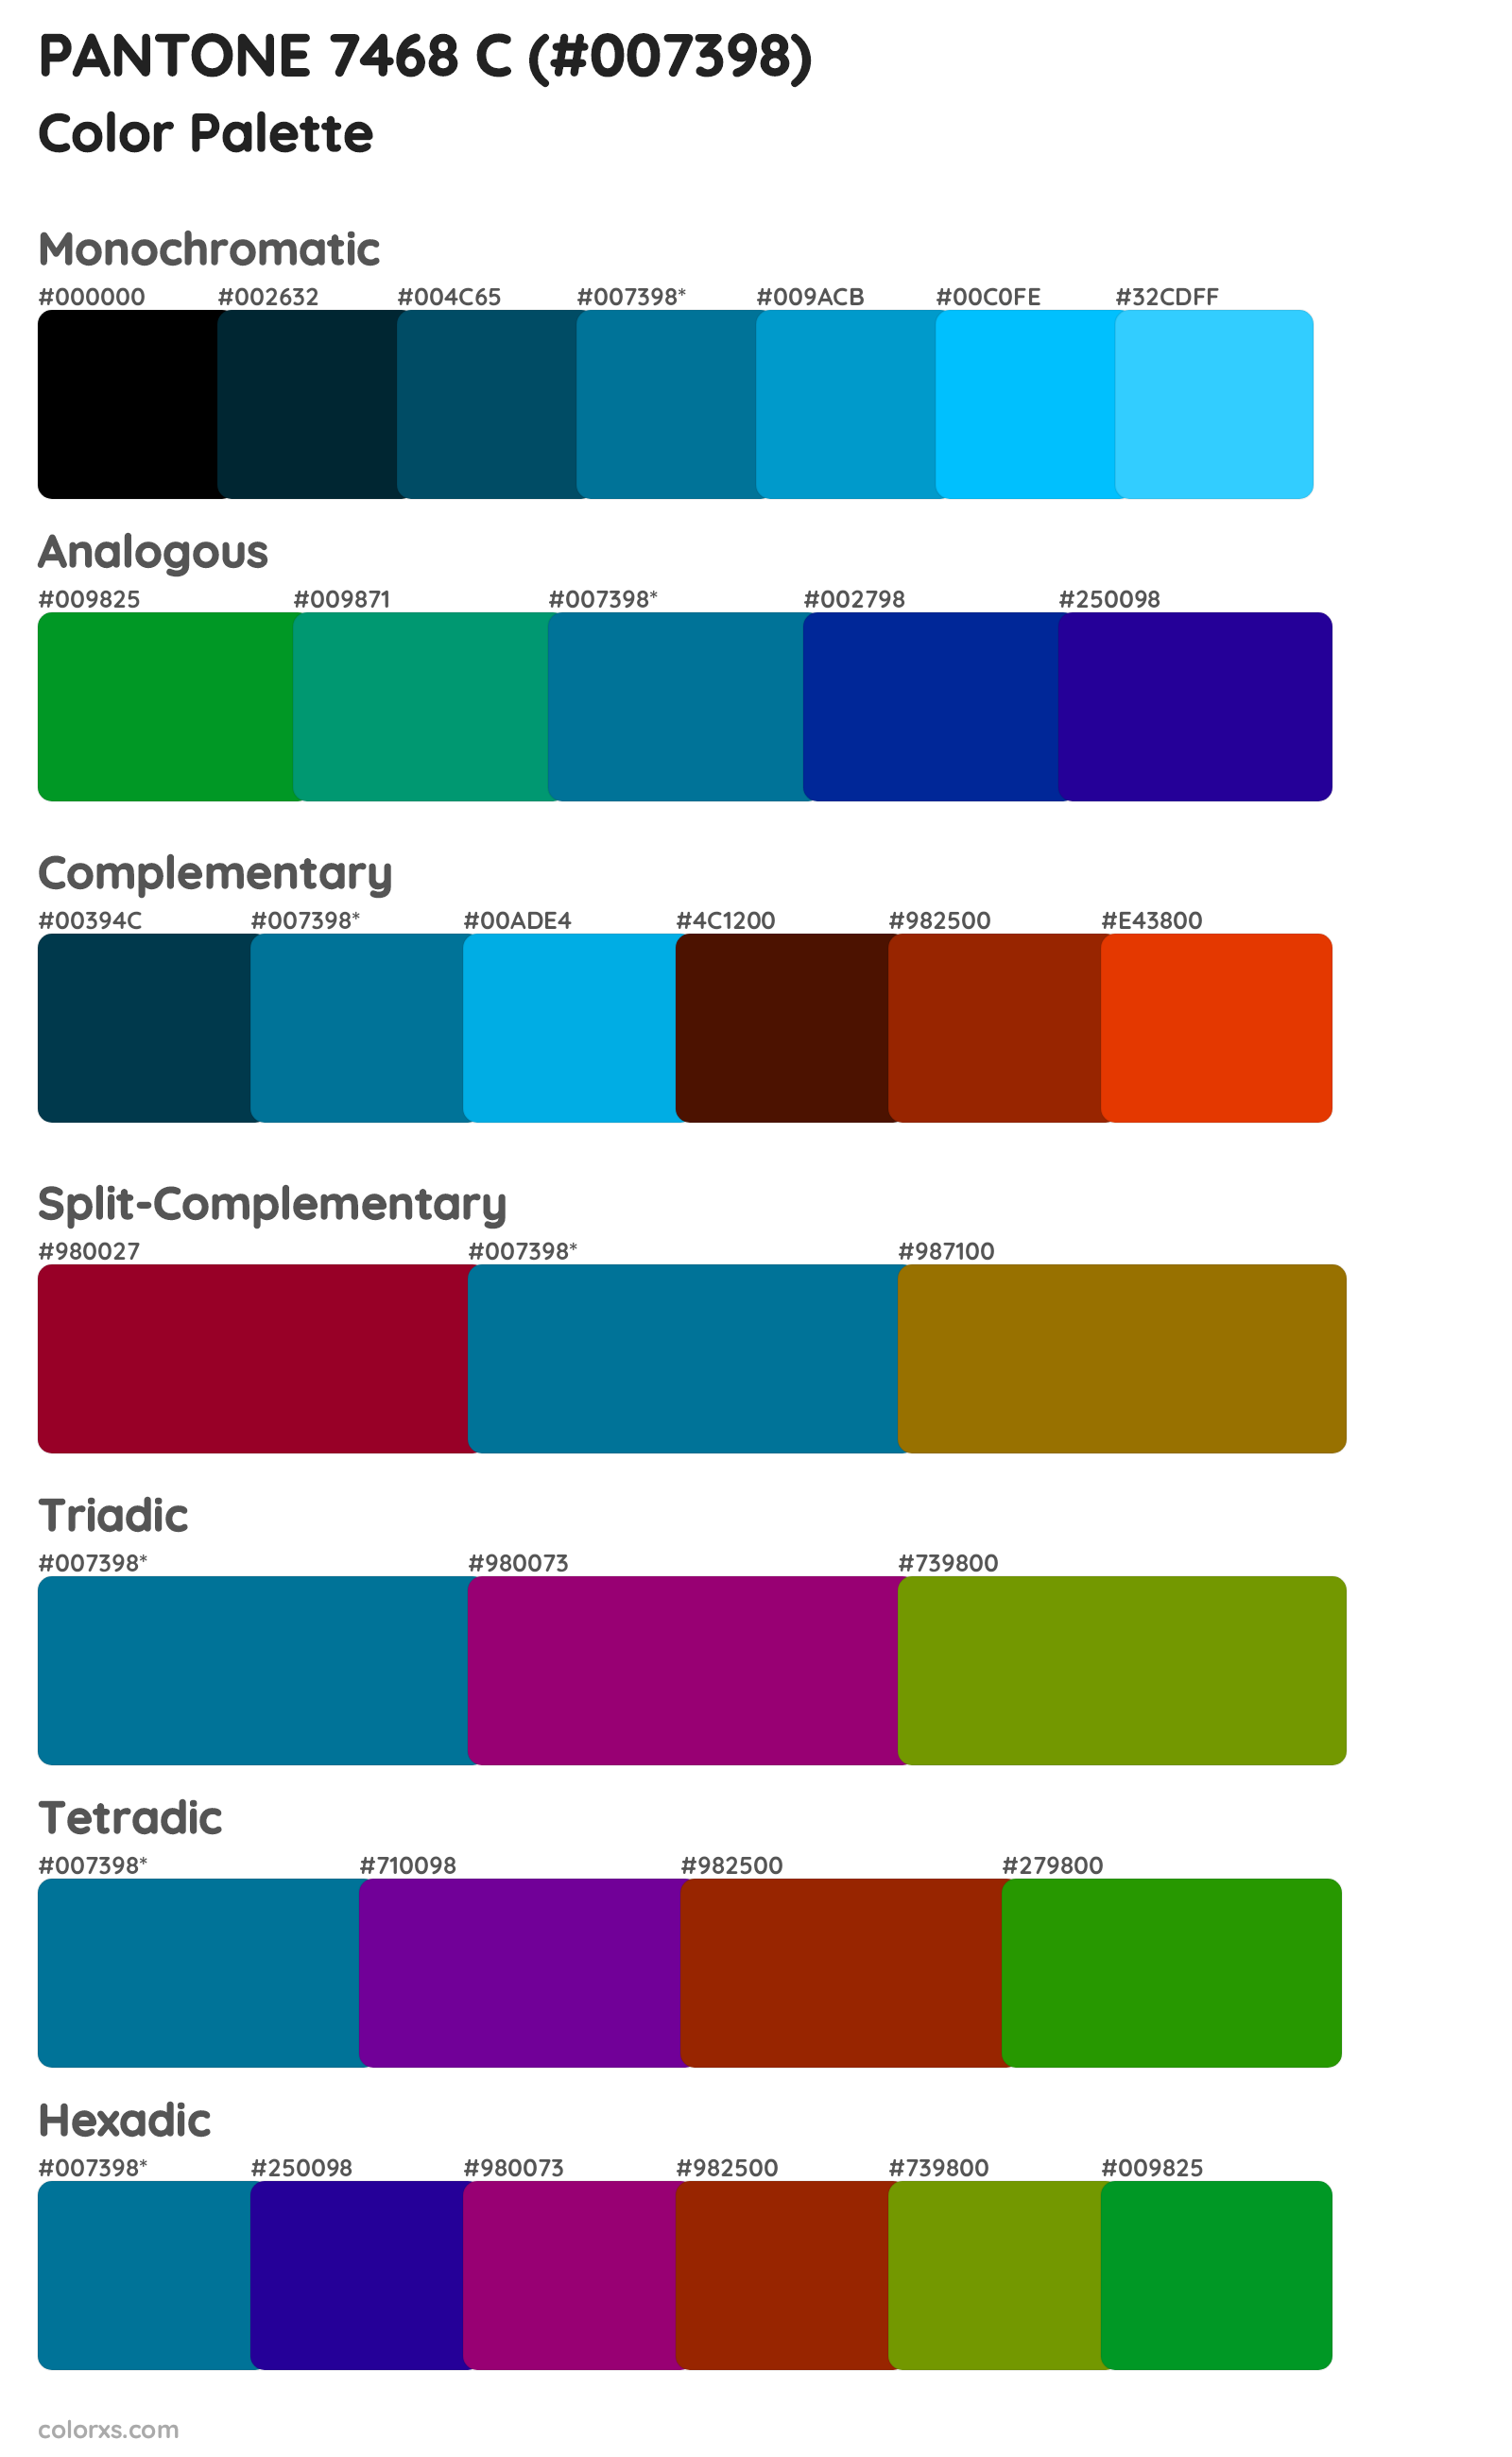 PANTONE 7468 C Color Scheme Palettes